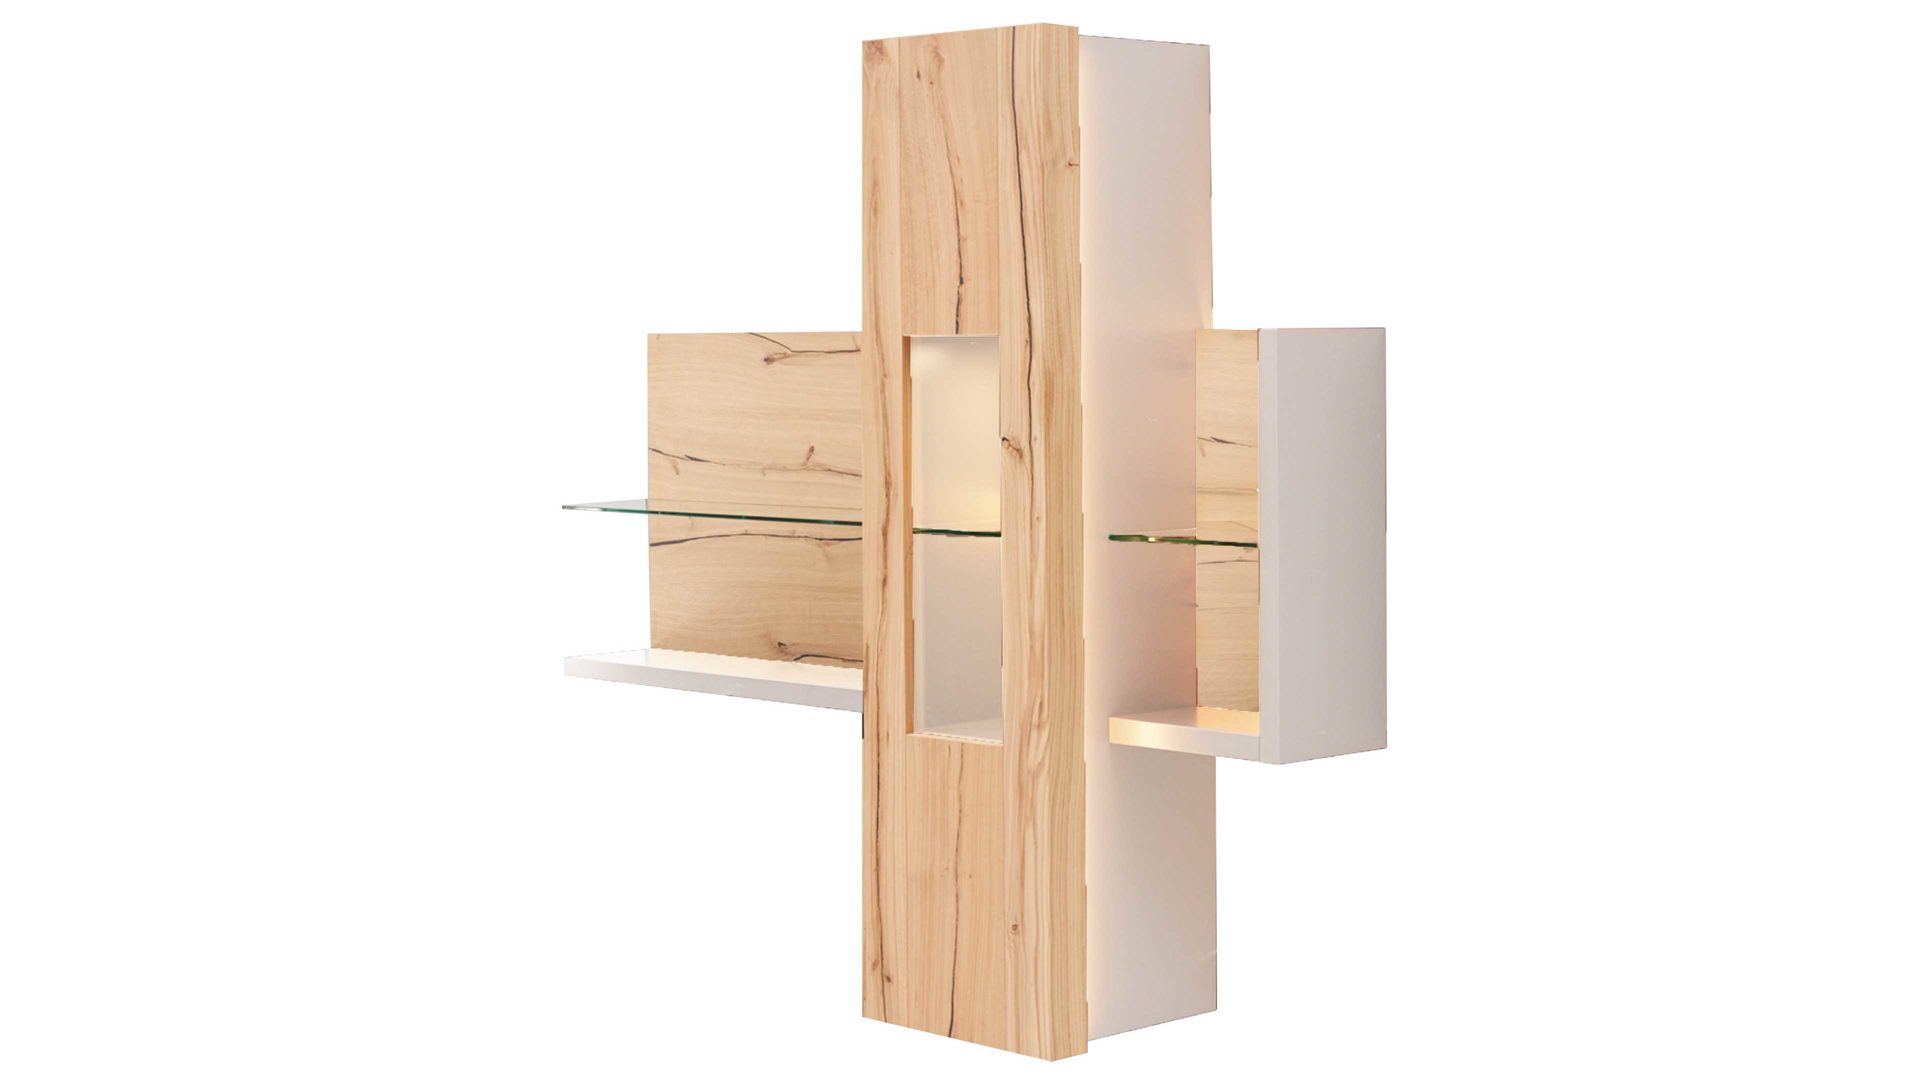 Hängeschrank Interliving aus Holz in Weiß Interliving Wohnzimmer Serie 2103 – Regal 560730 mit Vitrine 560740 Weiß & Asteiche – zweitelig